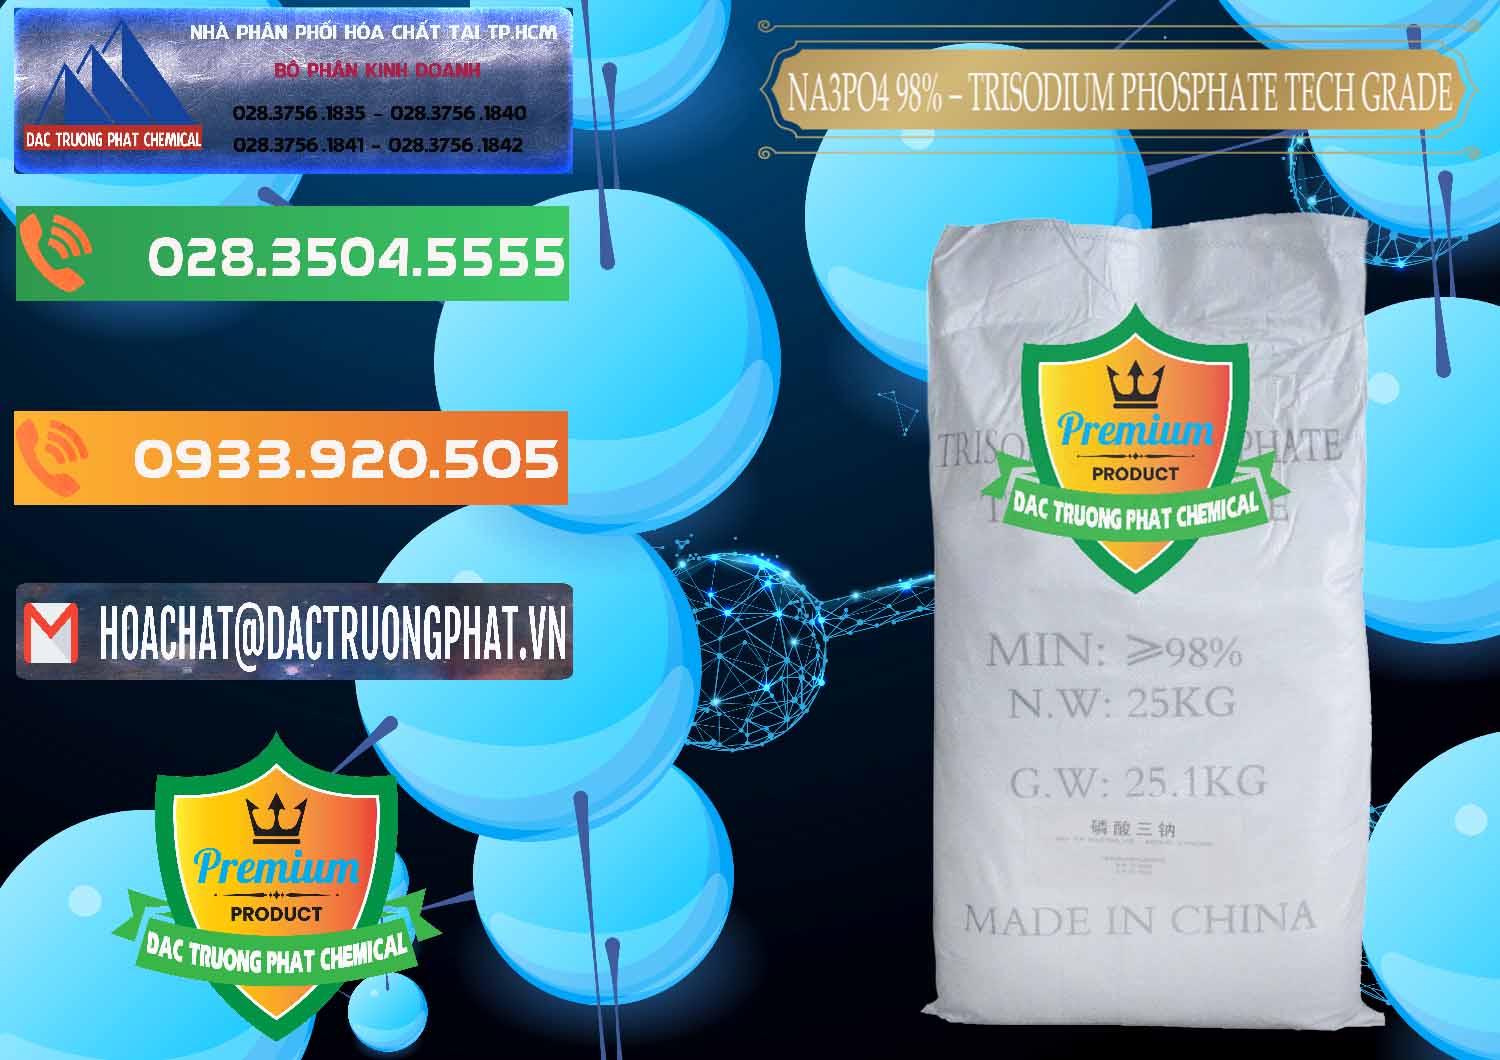 Đơn vị bán ( cung cấp ) Na3PO4 – Trisodium Phosphate 96% Tech Grade Trung Quốc China - 0104 - Cty chuyên phân phối & cung ứng hóa chất tại TP.HCM - hoachatxulynuoc.com.vn